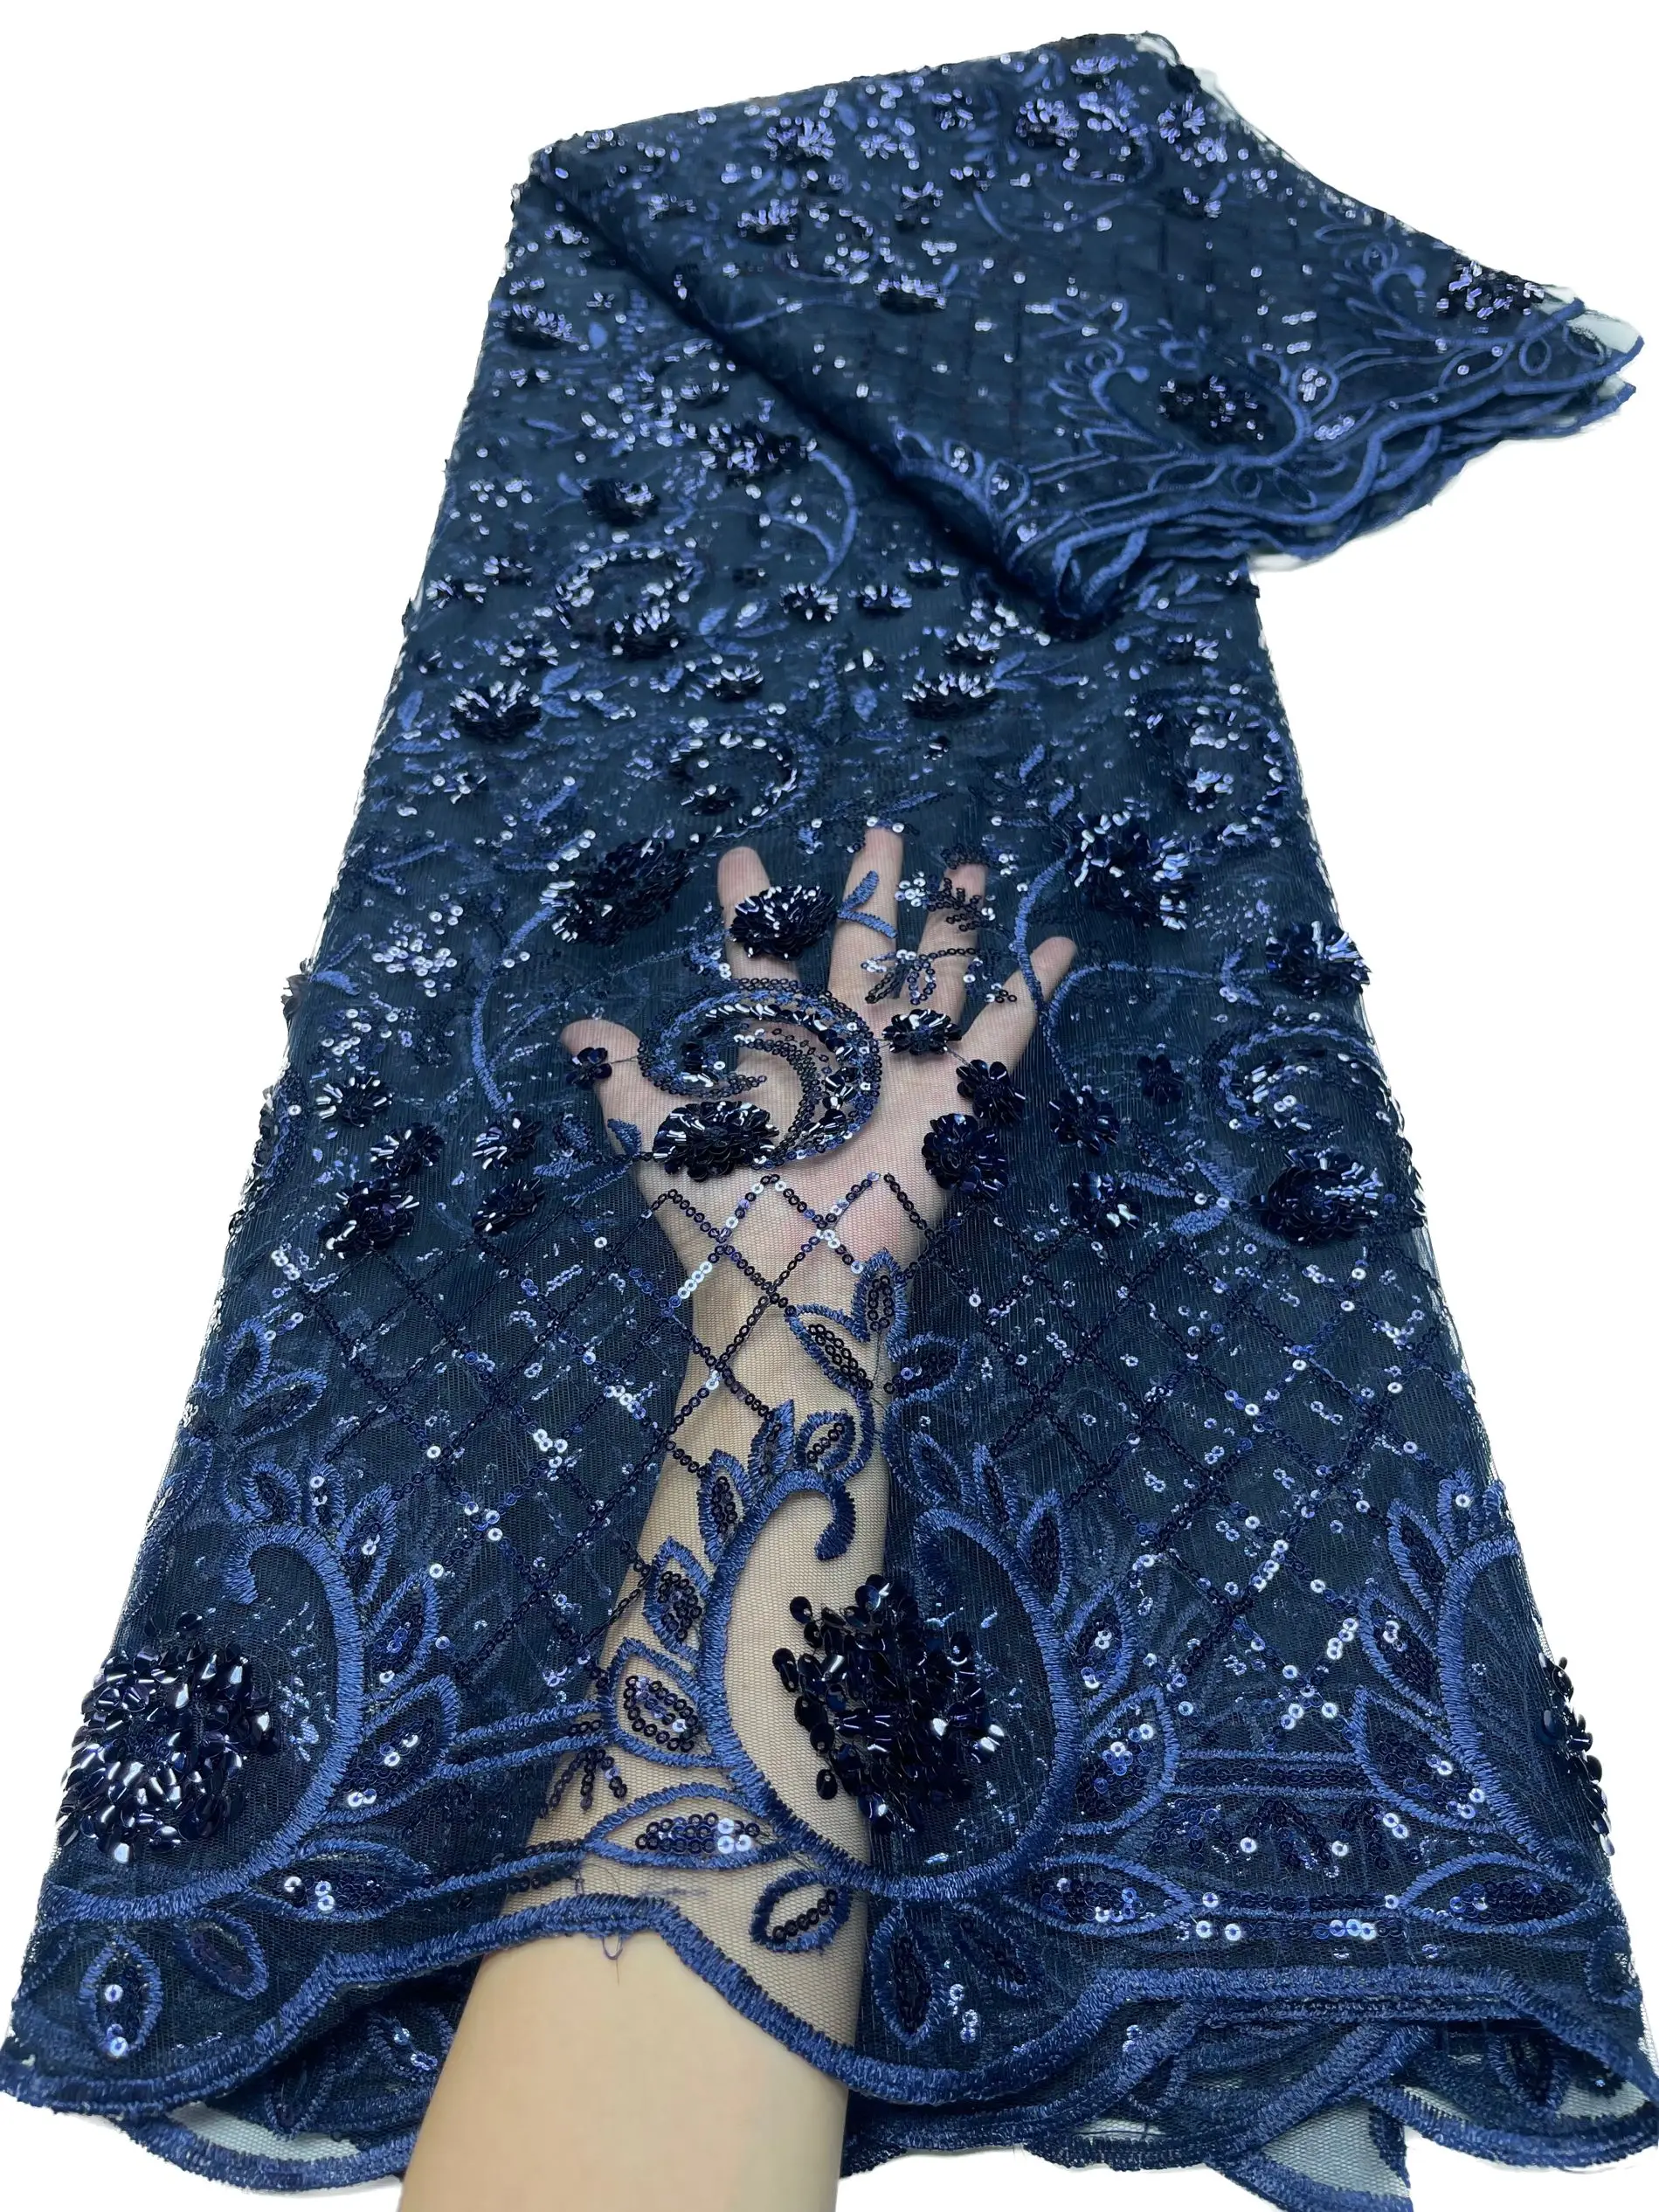 

YQOINFKS, 5 ярдов, французская кружевная ткань с блестками, африканская нигерийская Женская швейная одежда ручной работы, женское свадебное высококачественное платье